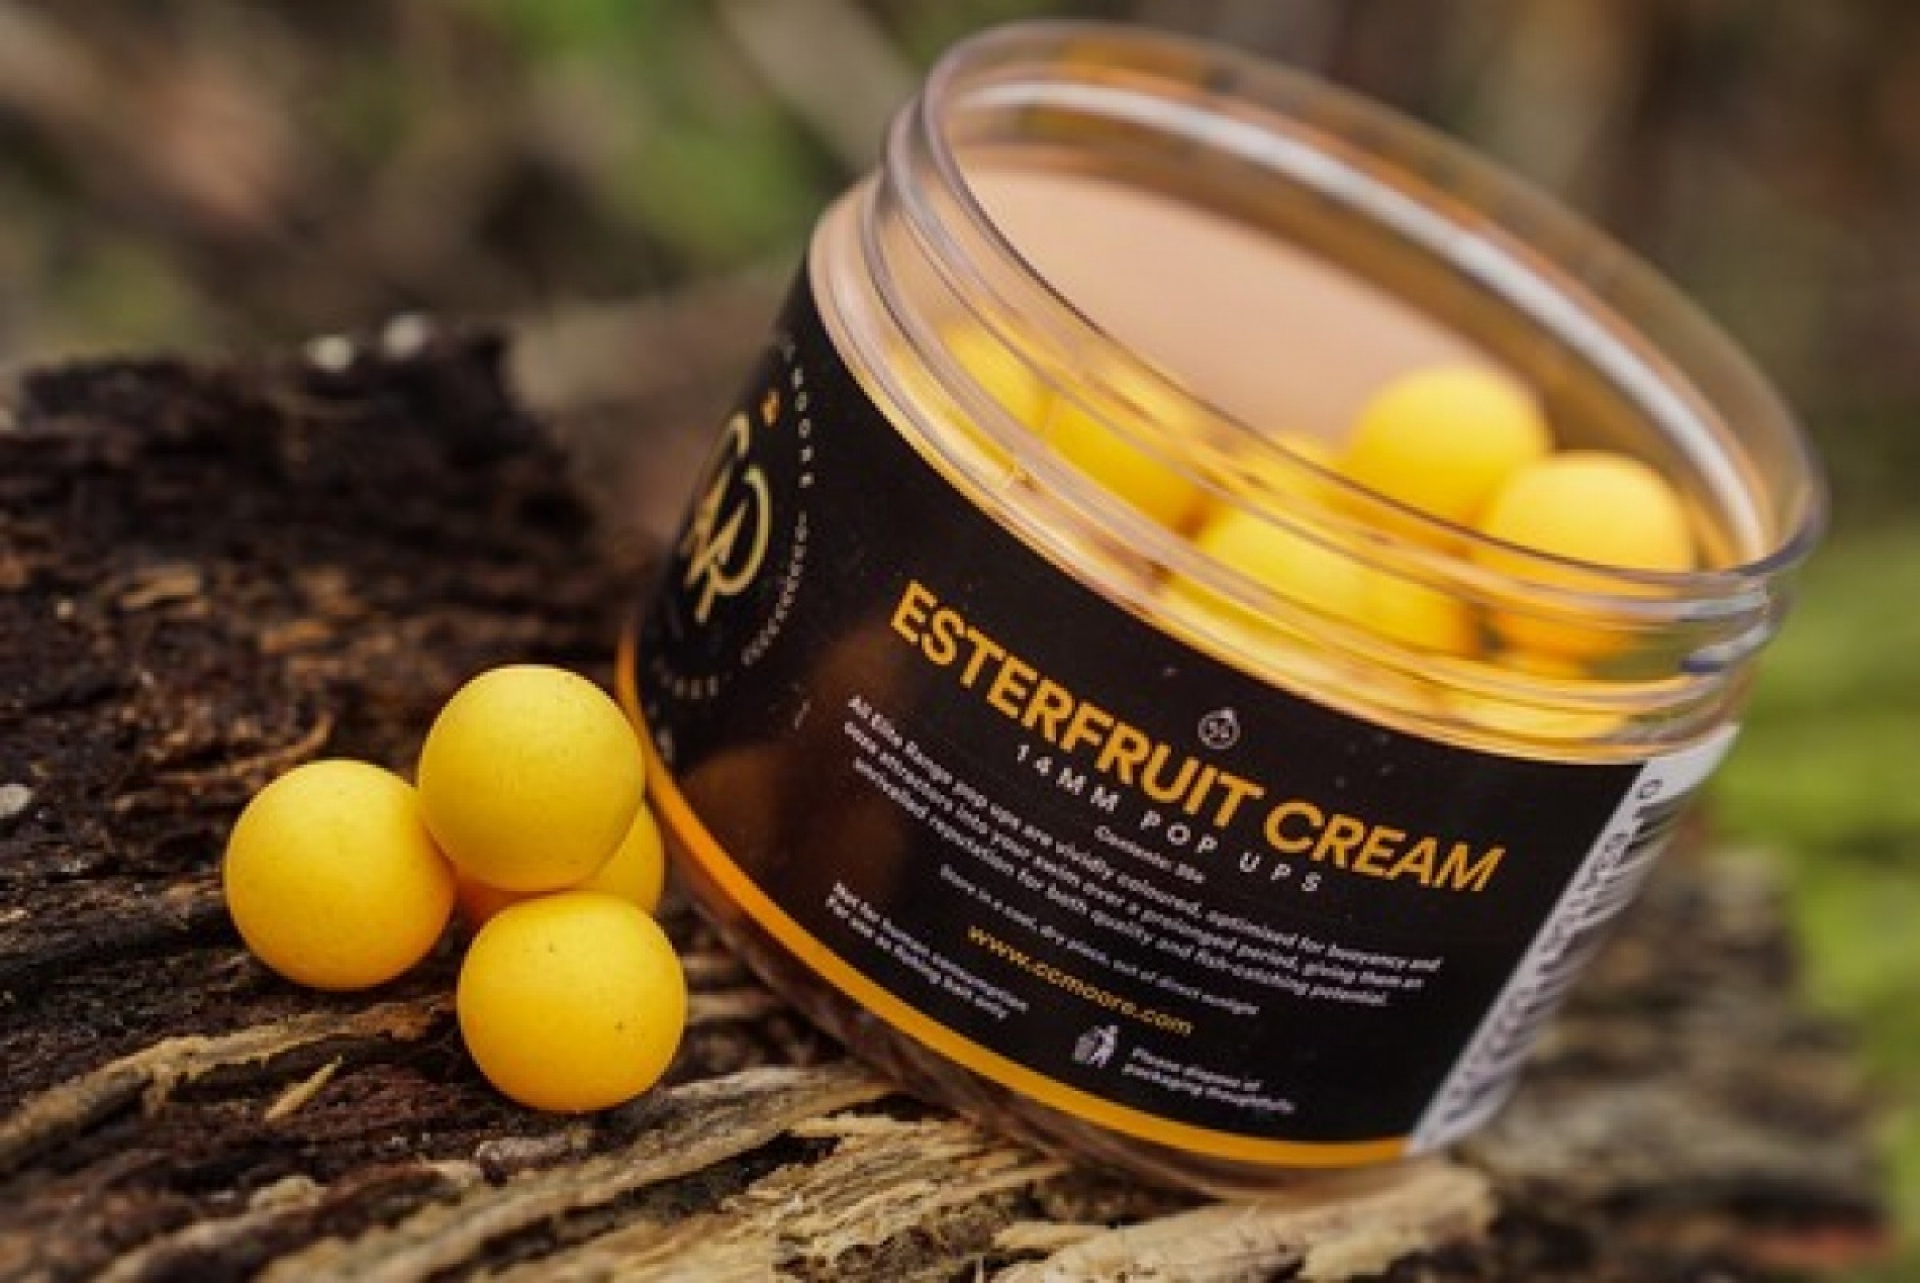 CcMoore Elite Pop Ups - Esterfruit Cream